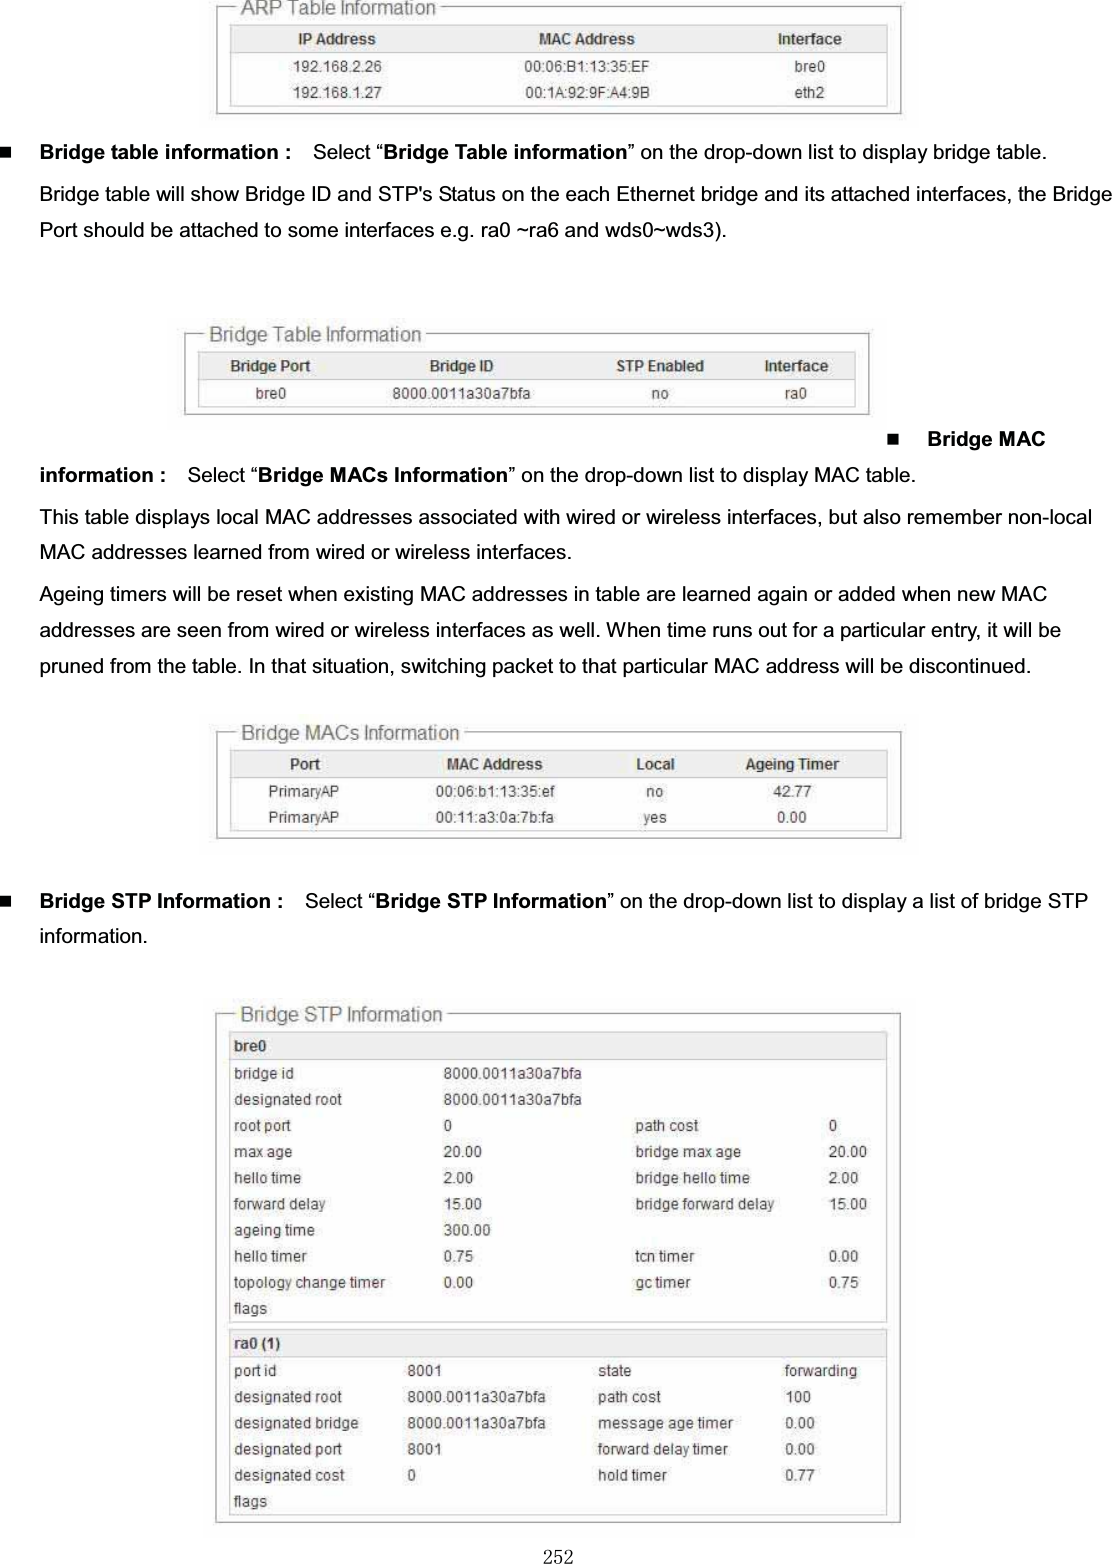 㻞㻡㻞Bridge table information : Select “Bridge Table information” on the drop-down list to display bridge table.Bridge table will show Bridge ID and STP&apos;s Status on the each Ethernet bridge and its attached interfaces, the Bridge Port should be attached to some interfaces e.g. ra0 ~ra6 and wds0~wds3).Bridge MAC information : Select “Bridge MACs Information” on the drop-down list to display MAC table.This table displays local MAC addresses associated with wired or wireless interfaces, but also remember non-local MAC addresses learned from wired or wireless interfaces.  Ageing timers will be reset when existing MAC addresses in table are learned again or added when new MAC addresses are seen from wired or wireless interfaces as well. When time runs out for a particular entry, it will be pruned from the table. In that situation, switching packet to that particular MAC address will be discontinued.Bridge STP Information : Select “Bridge STP Information” on the drop-down list to display a list of bridge STP information.